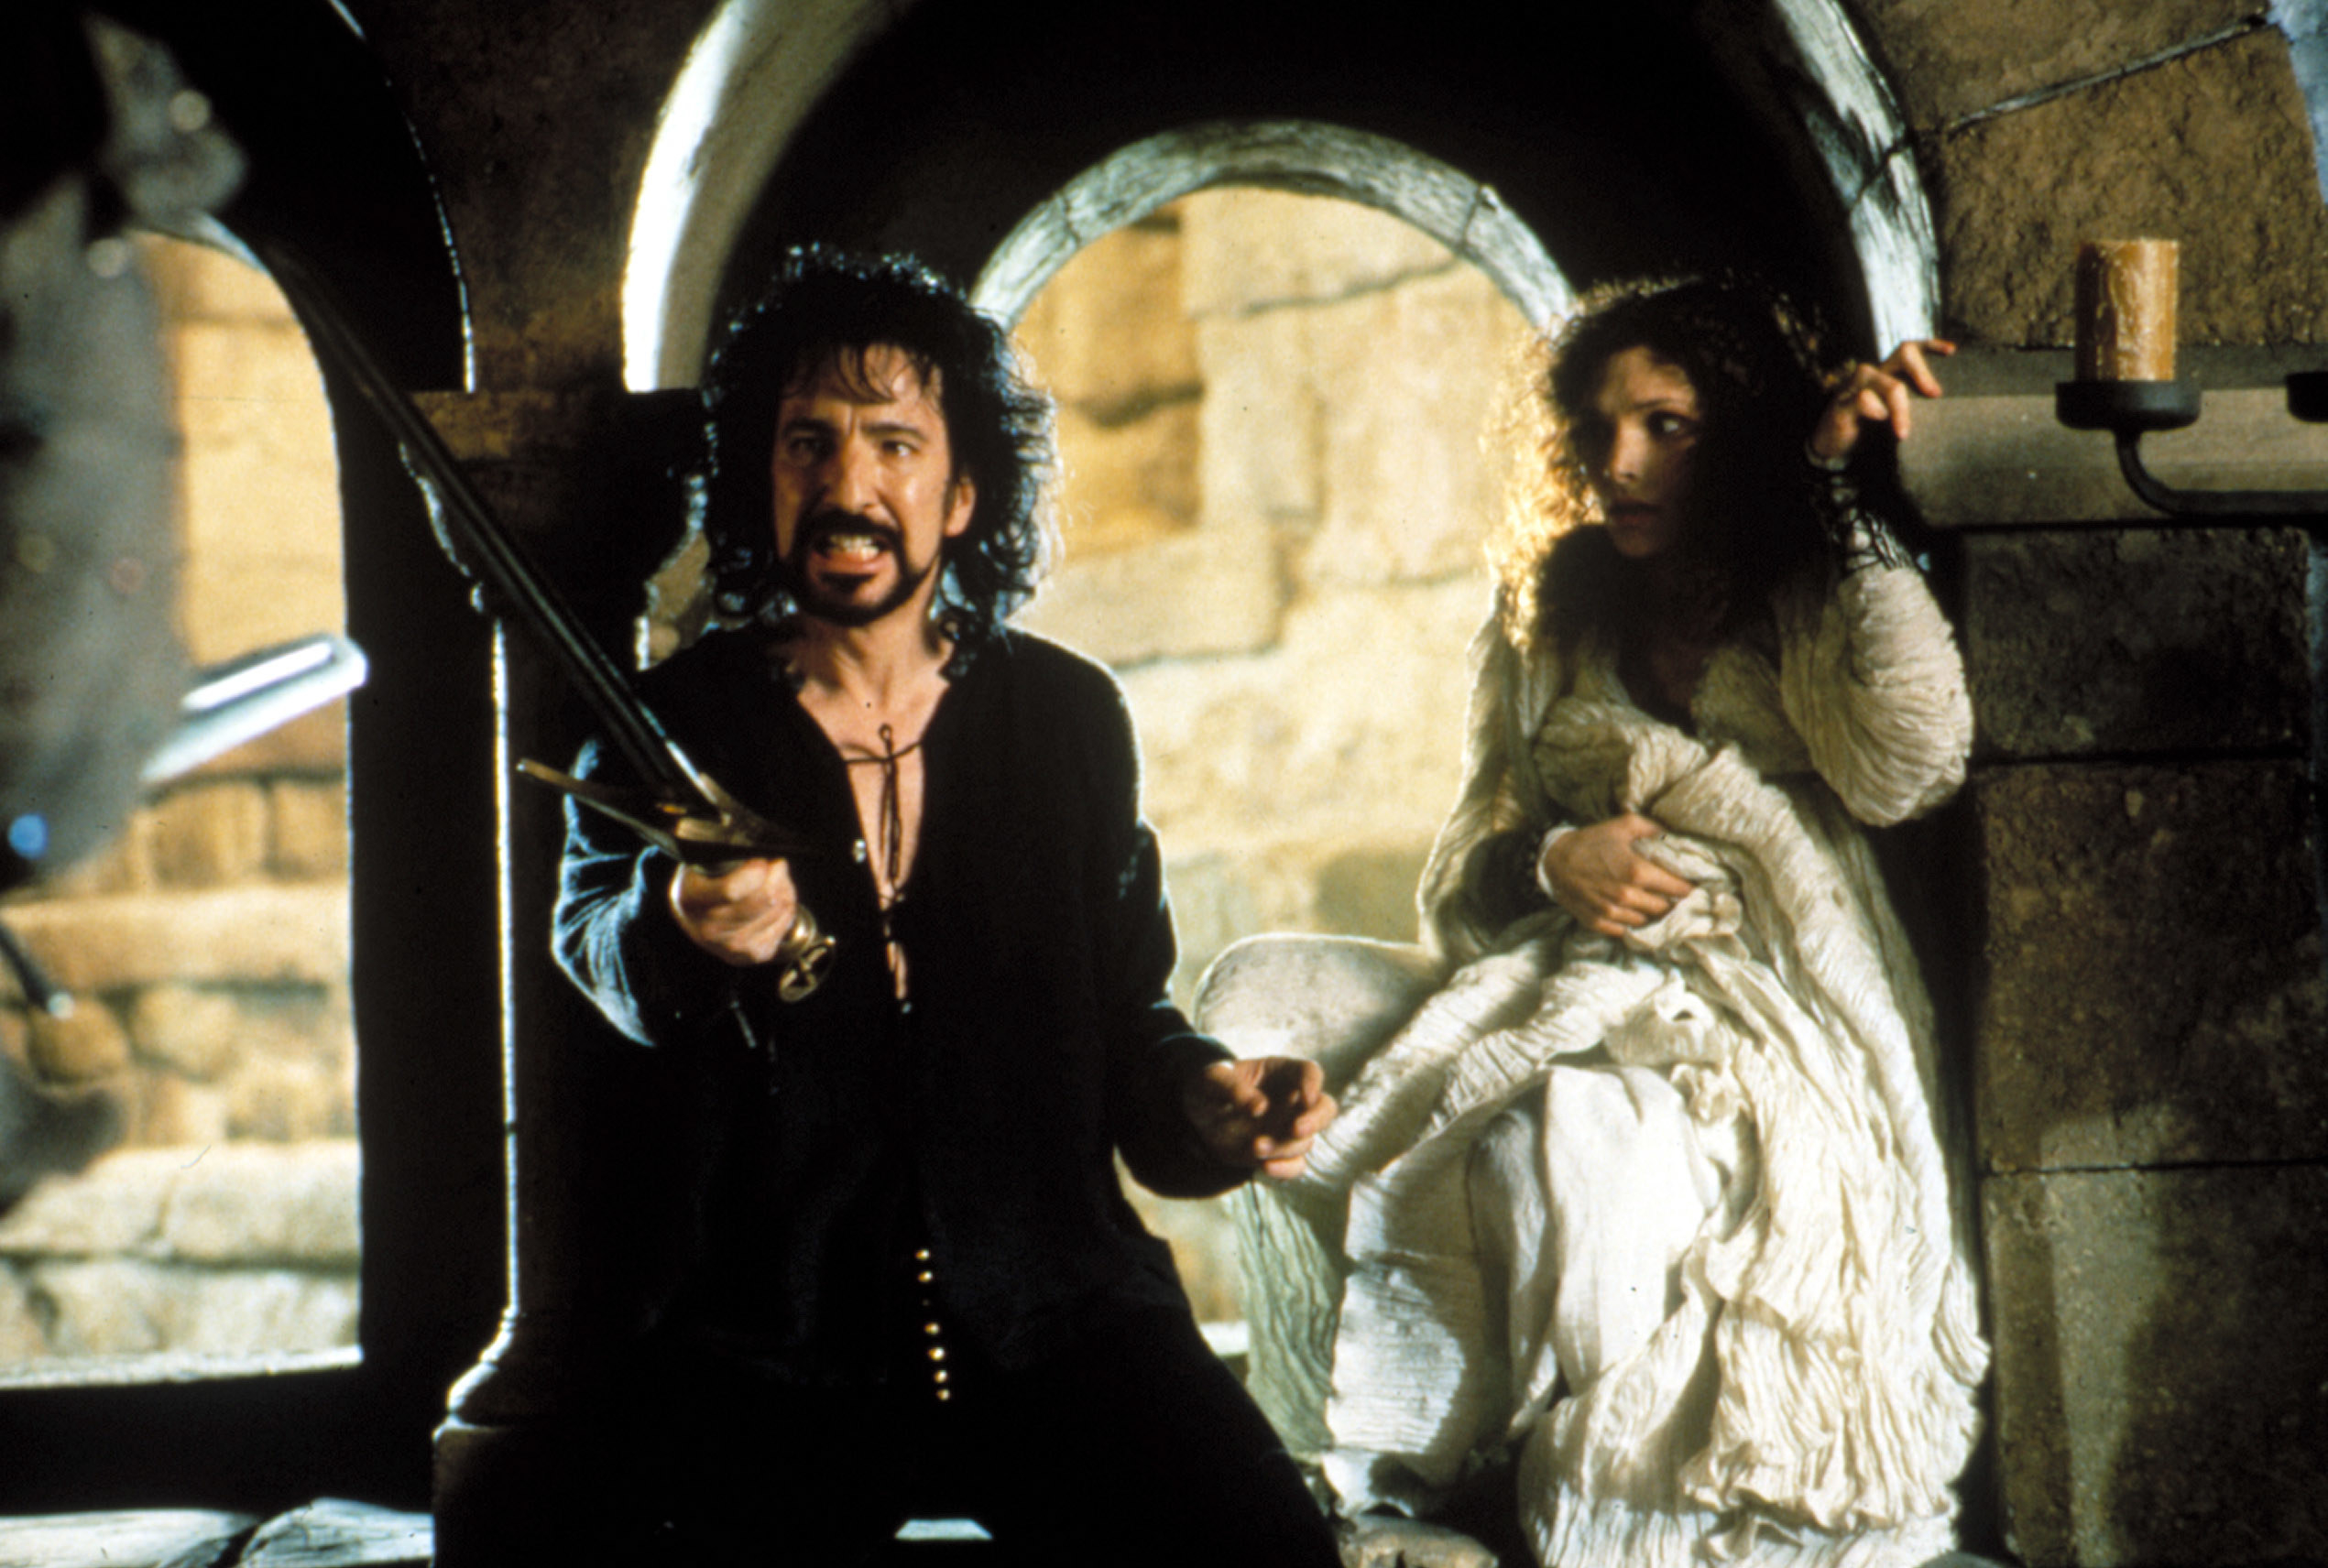 Alan Rickman brandishes a sword while Mary Elizabeth Mastrantonio hids behind him